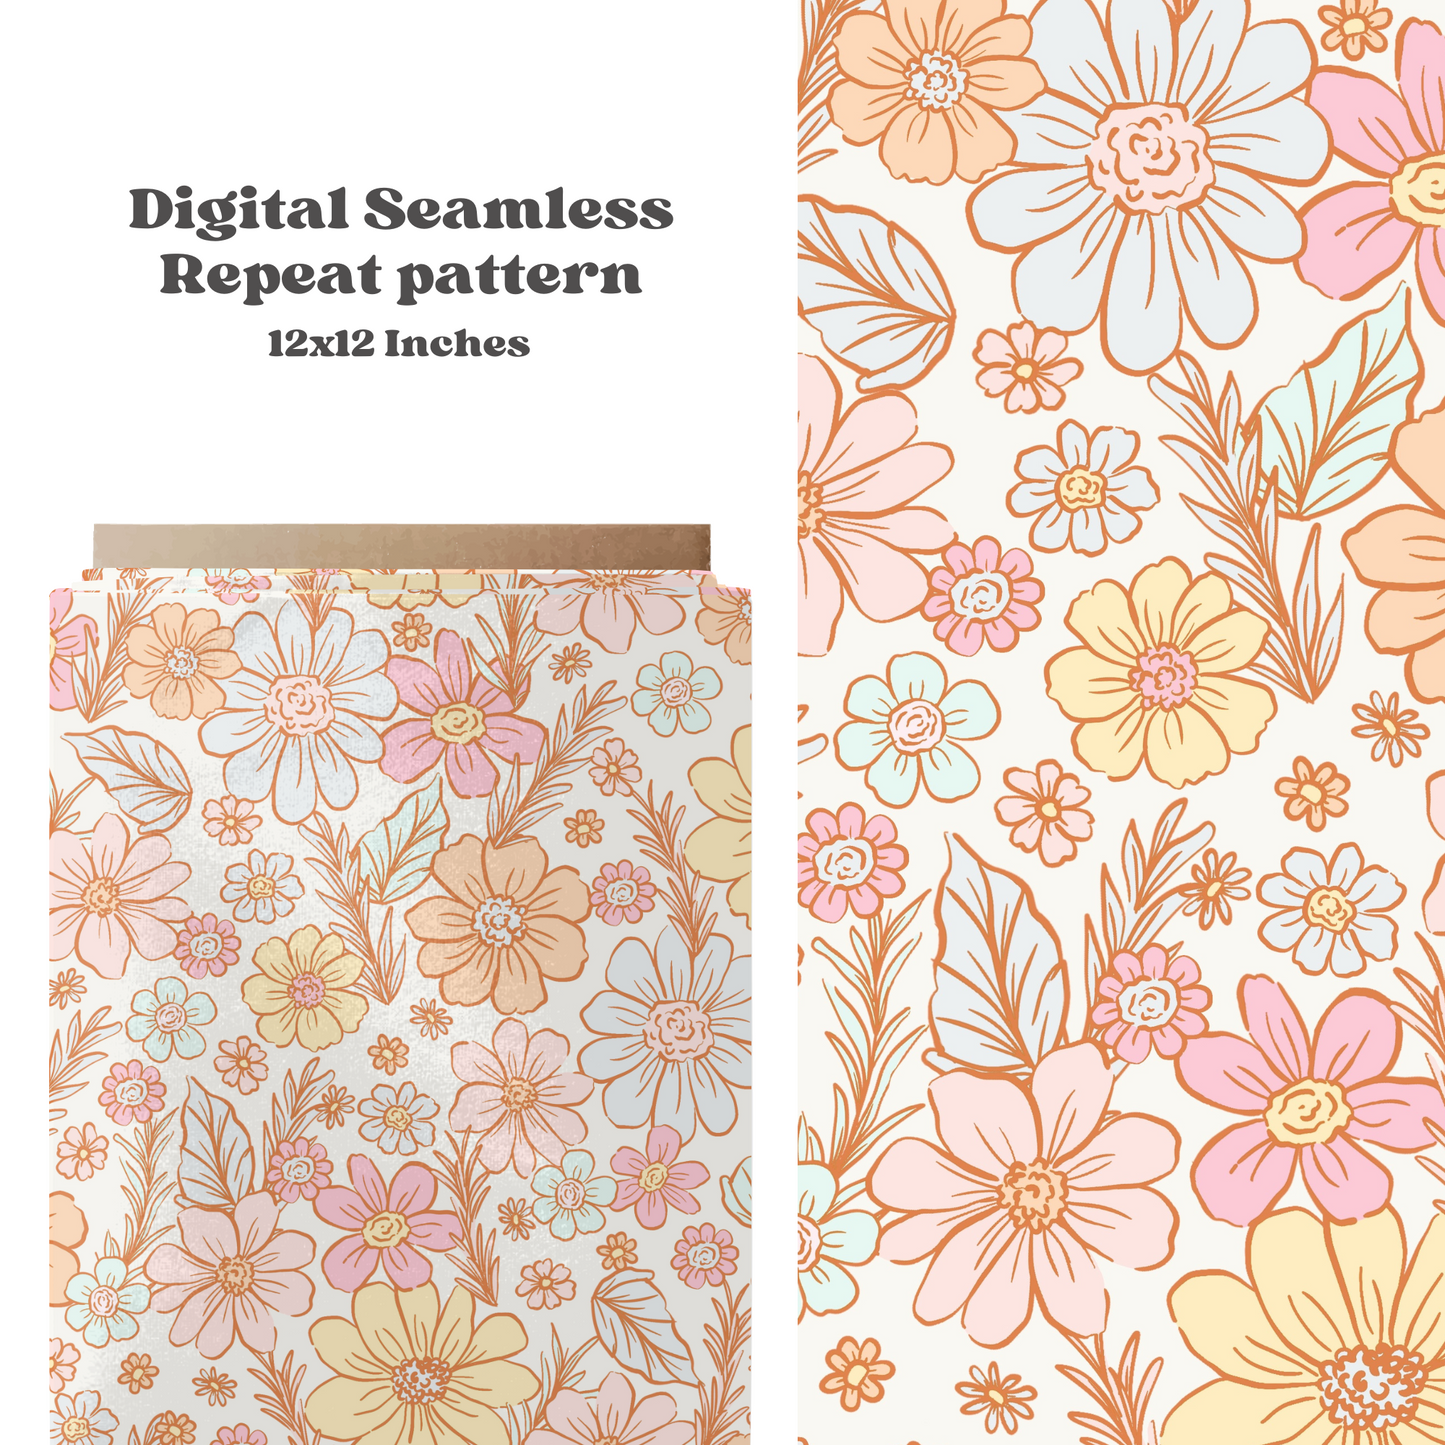 Pastel Spring Floral Pattern Design